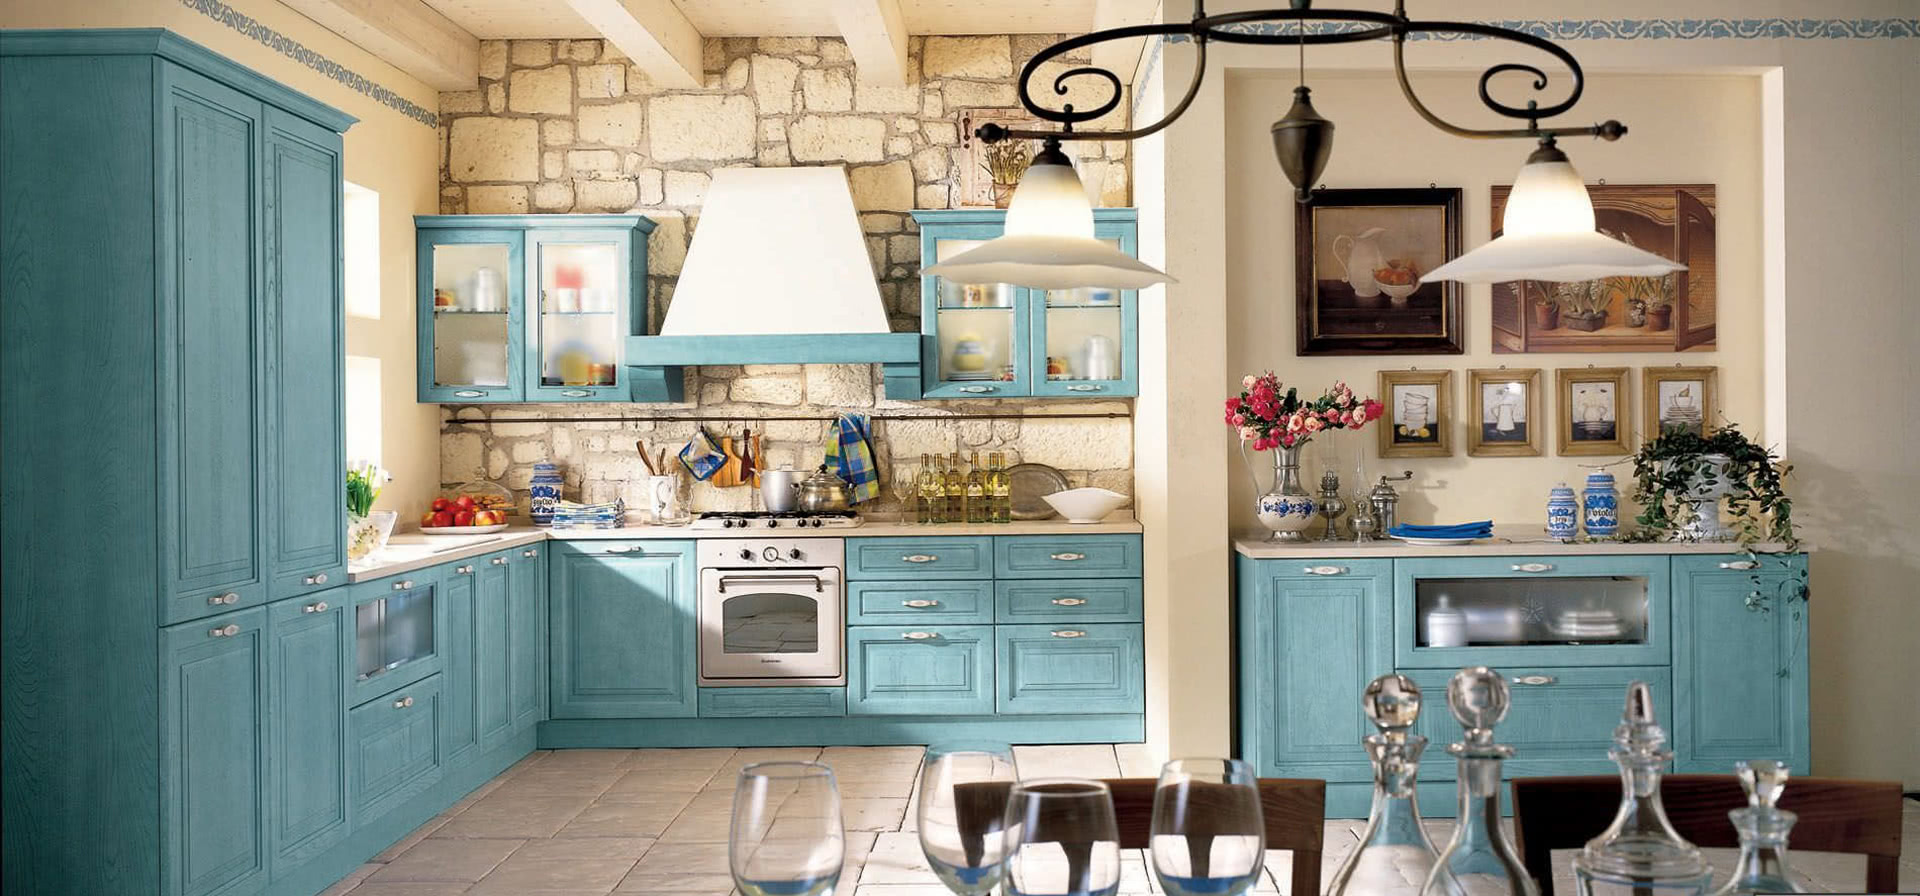 стиль кухни прованс цвет голубой